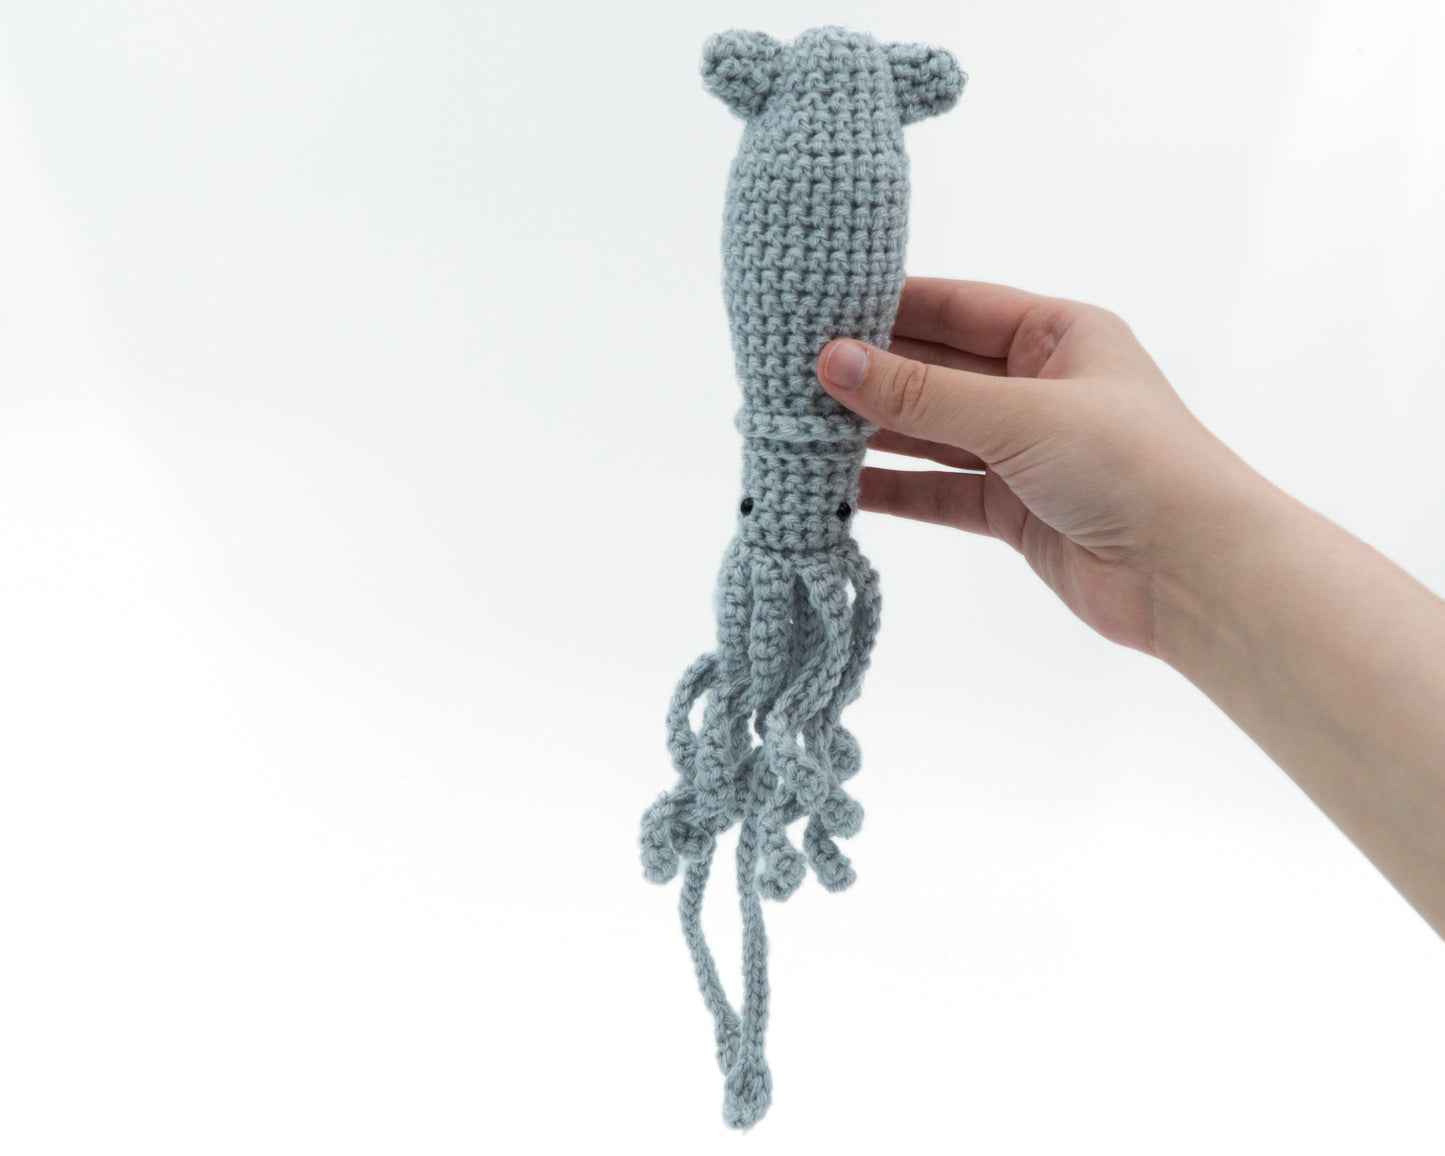 amigurumi crochet squid pattern in hand for size comparison